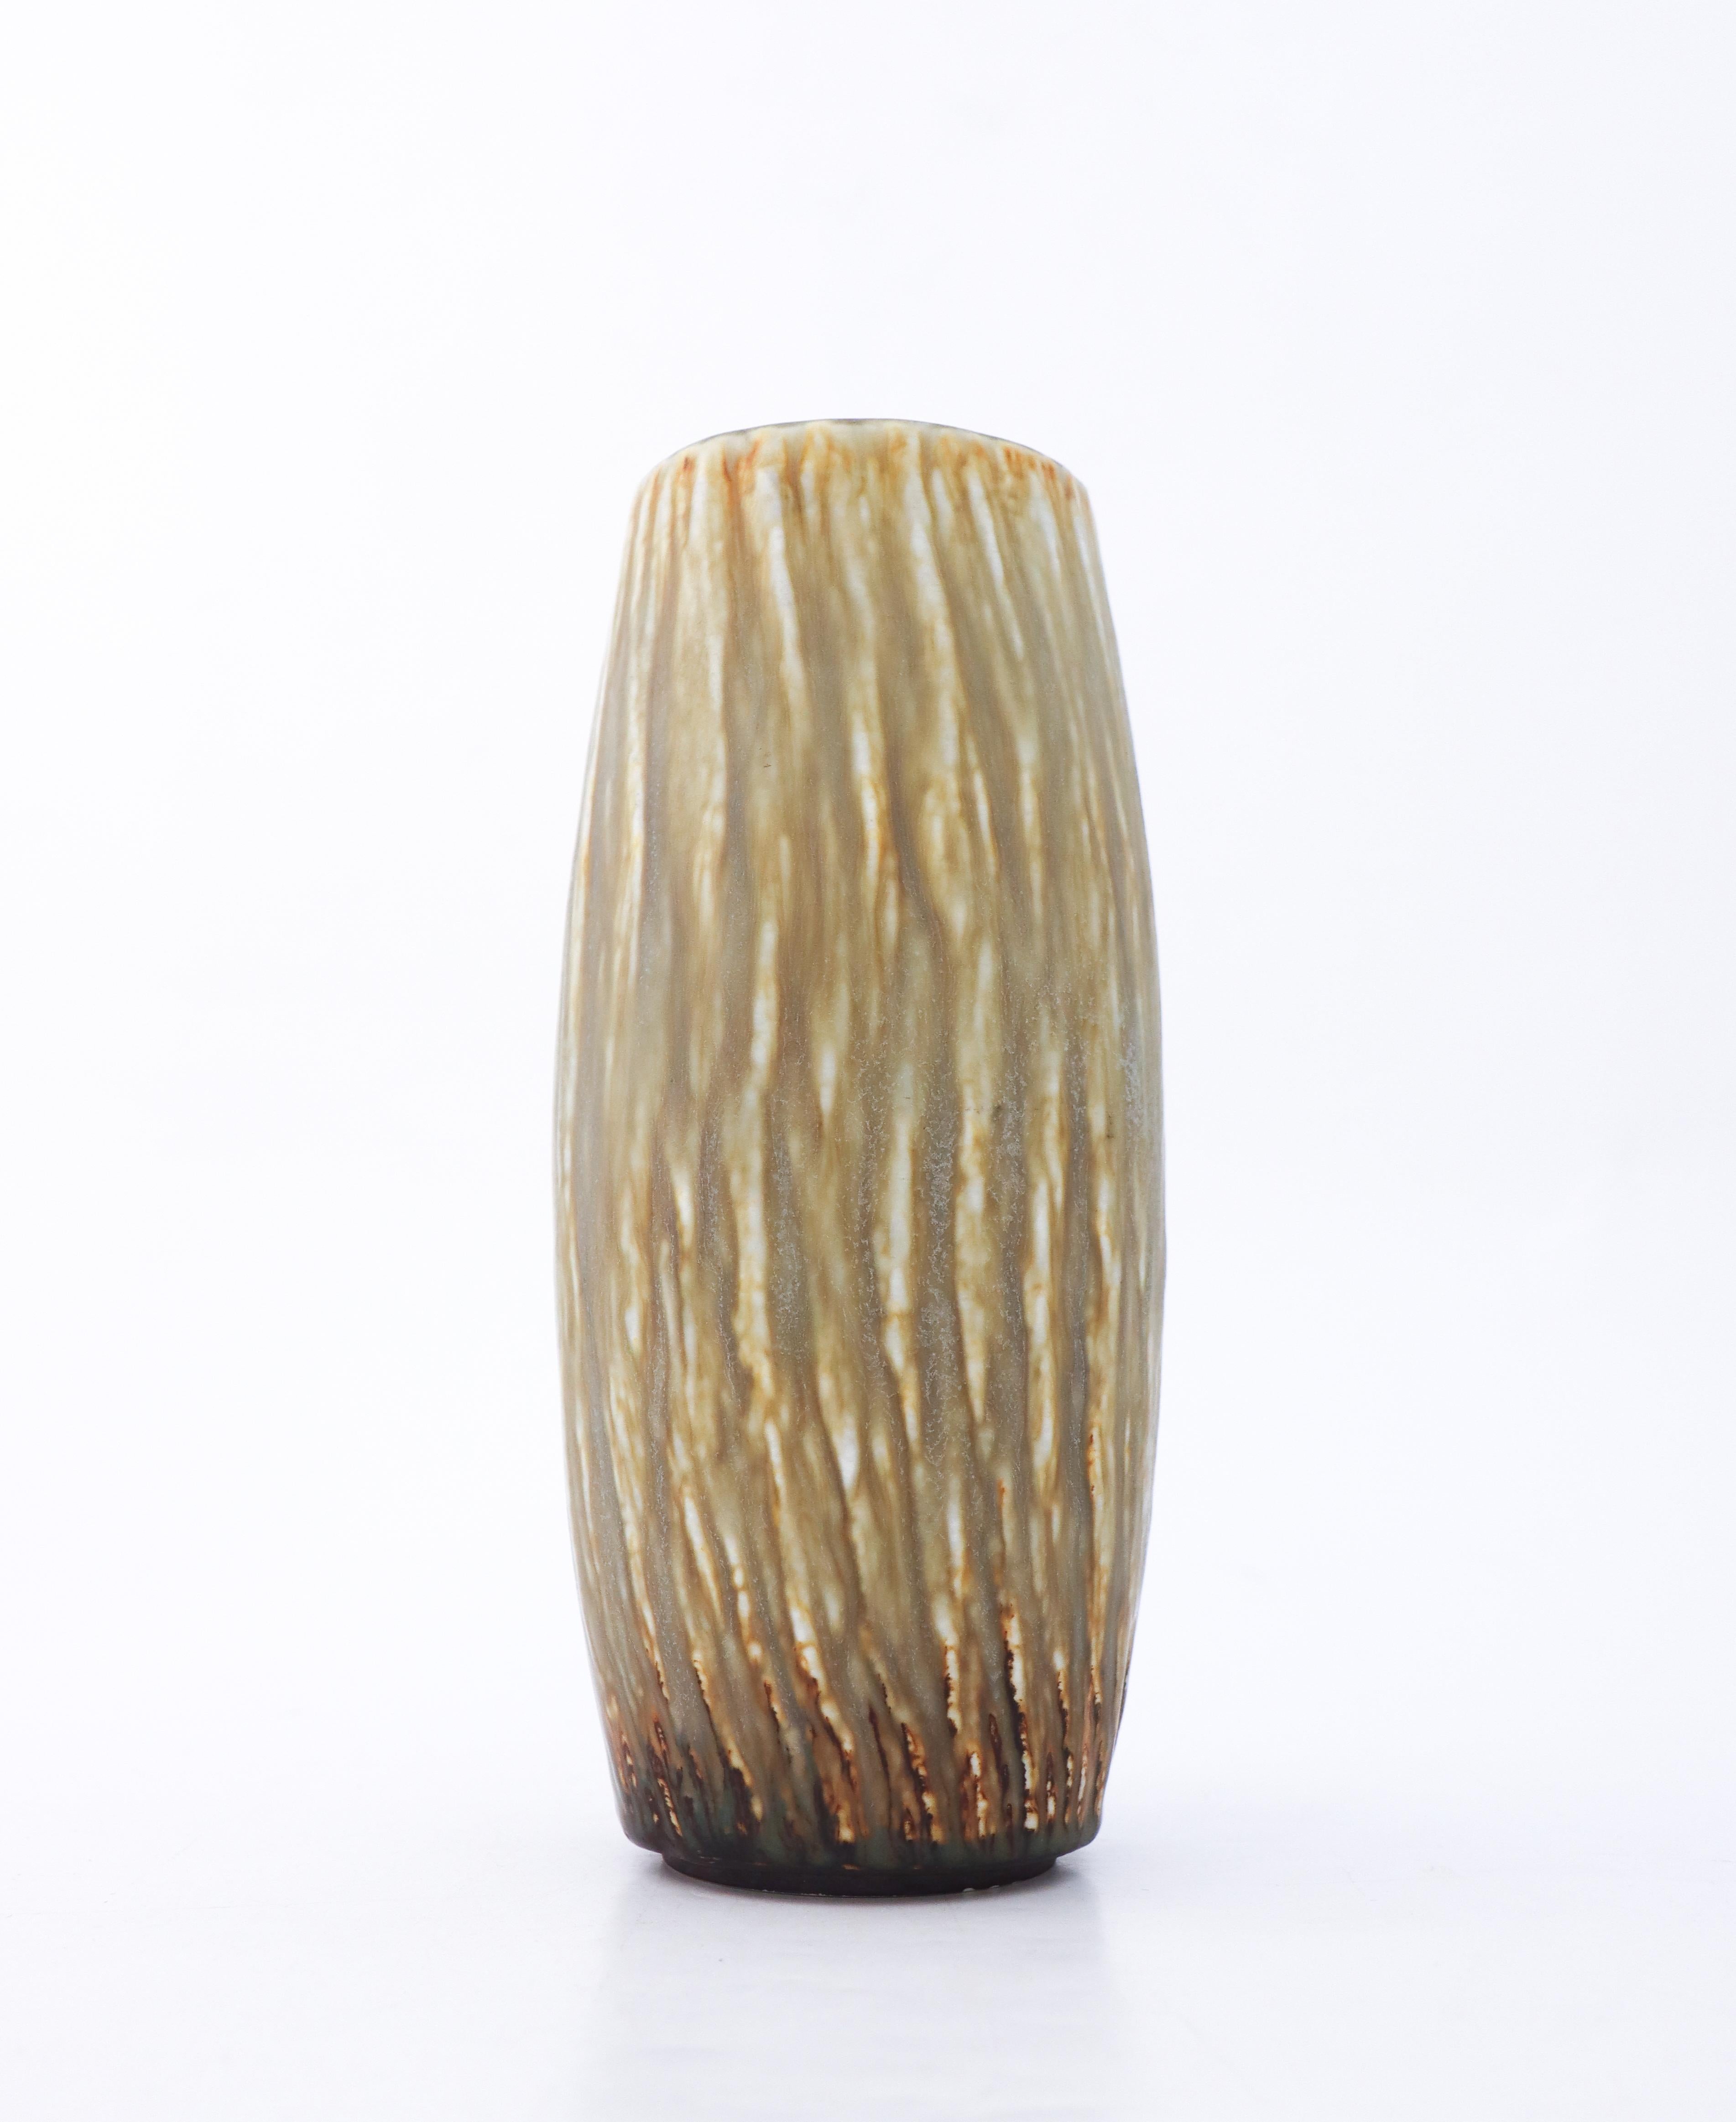 Die Vase aus Steinzeug aus der Rubus-Serie wurde von Gunnar Nylund in Rörstrand entworfen. Sie ist 22,5 cm hoch. Es ist in neuwertigem Zustand, aber als 2. Qualität gekennzeichnet. 

Gunnar Nylund wurde 1904 in Paris geboren. Seine Eltern arbeiteten